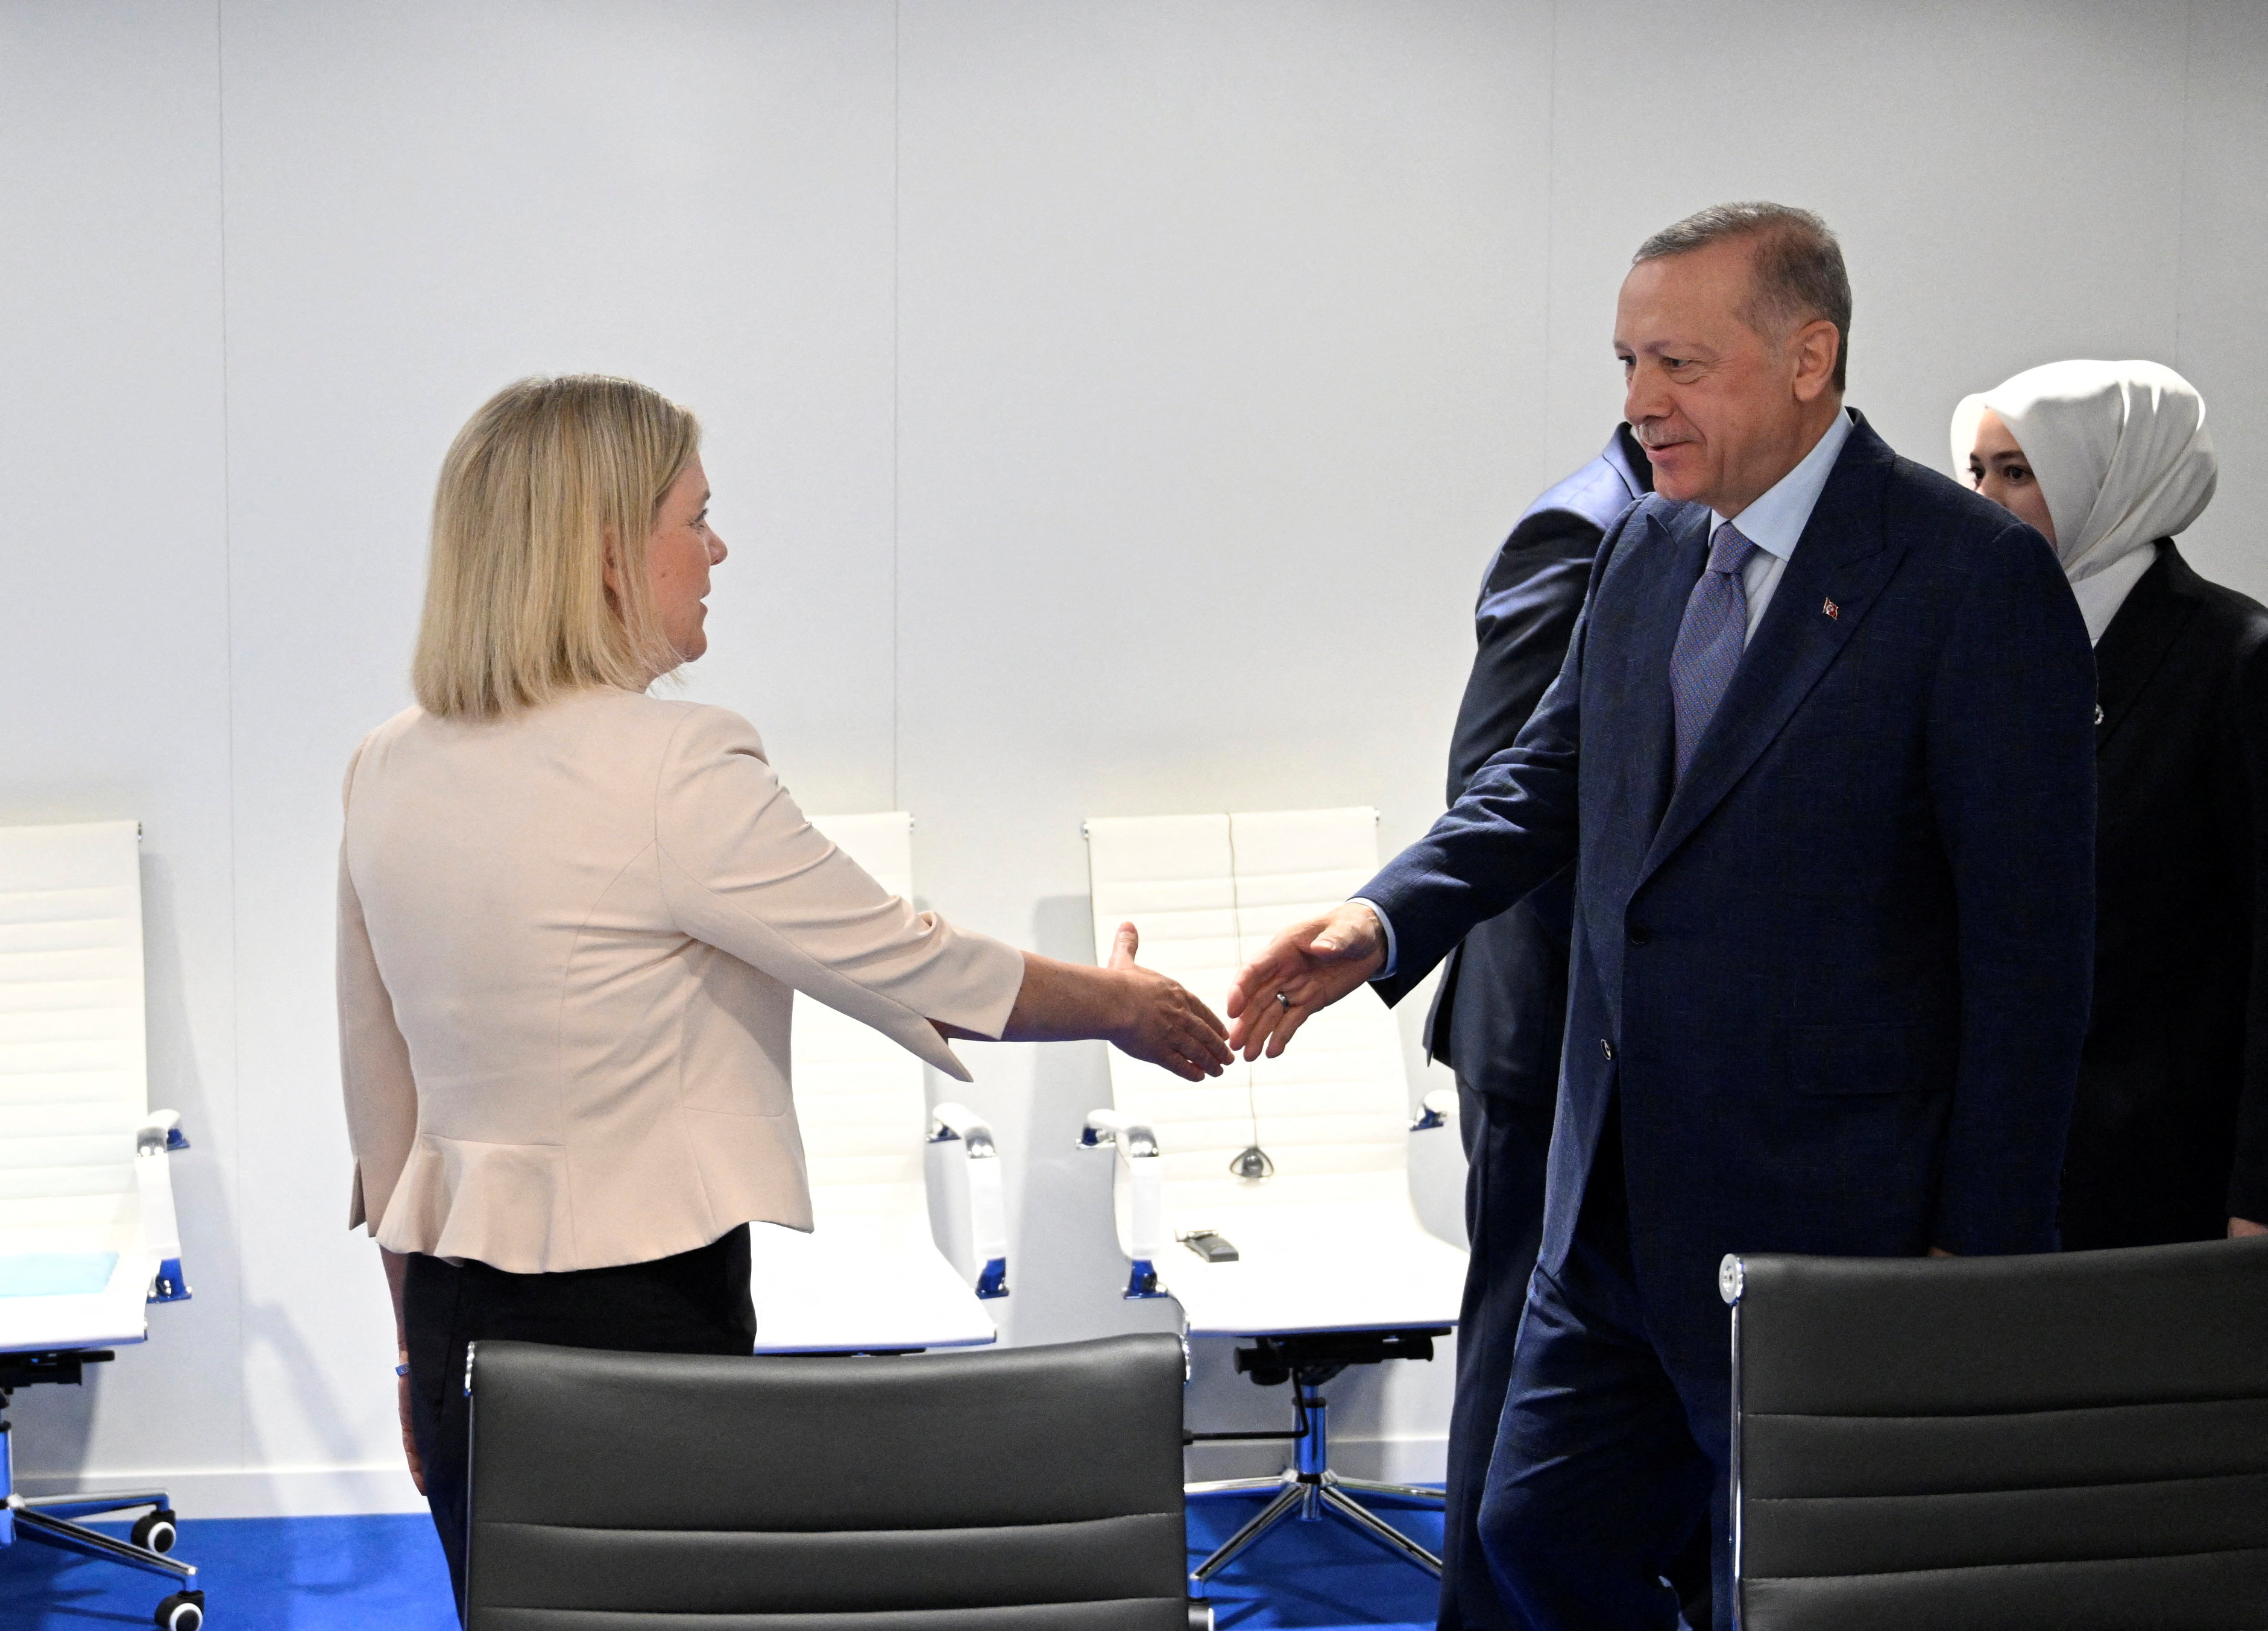 La primera ministro sueca, Magdalena Andersson, saluda al presidente turco, Recep Tayyip Erdogan, en una primera reunión bilateral para discutir el ingreso de Suecia y Finlandia a la alianza militar occidental. Henrik Montgomery/TT News Agency/via REUTERS.